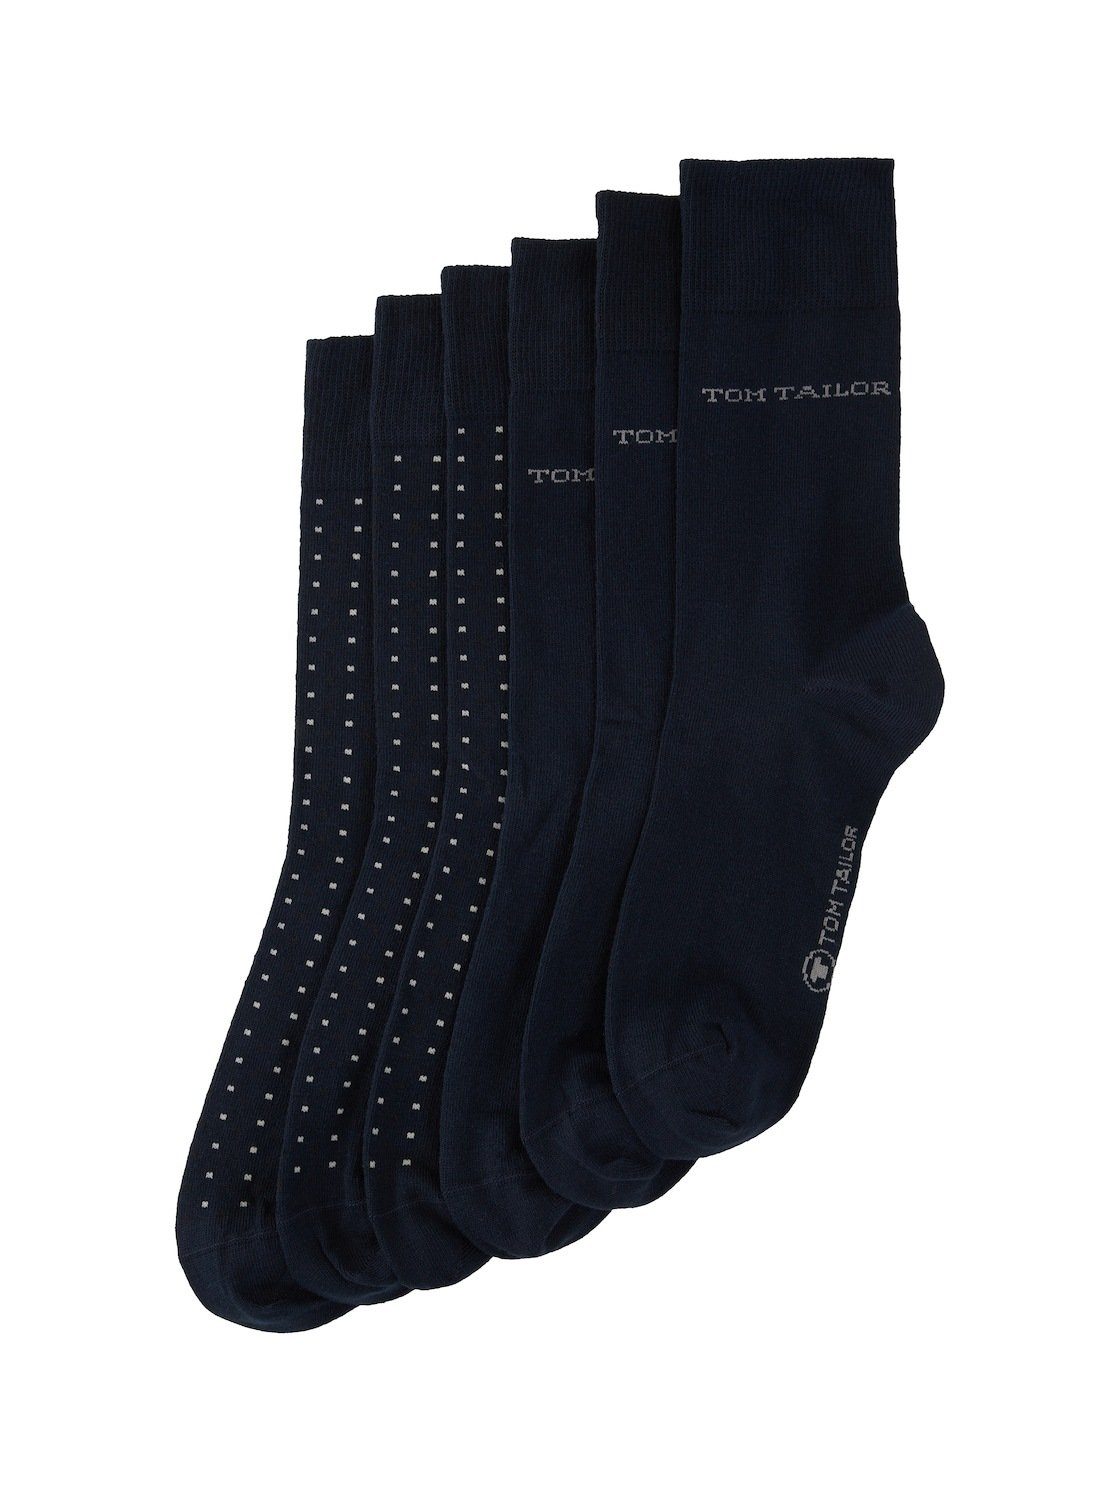 Sechserpack TAILOR (im TOM Socken Basic Sechserpack) Socken